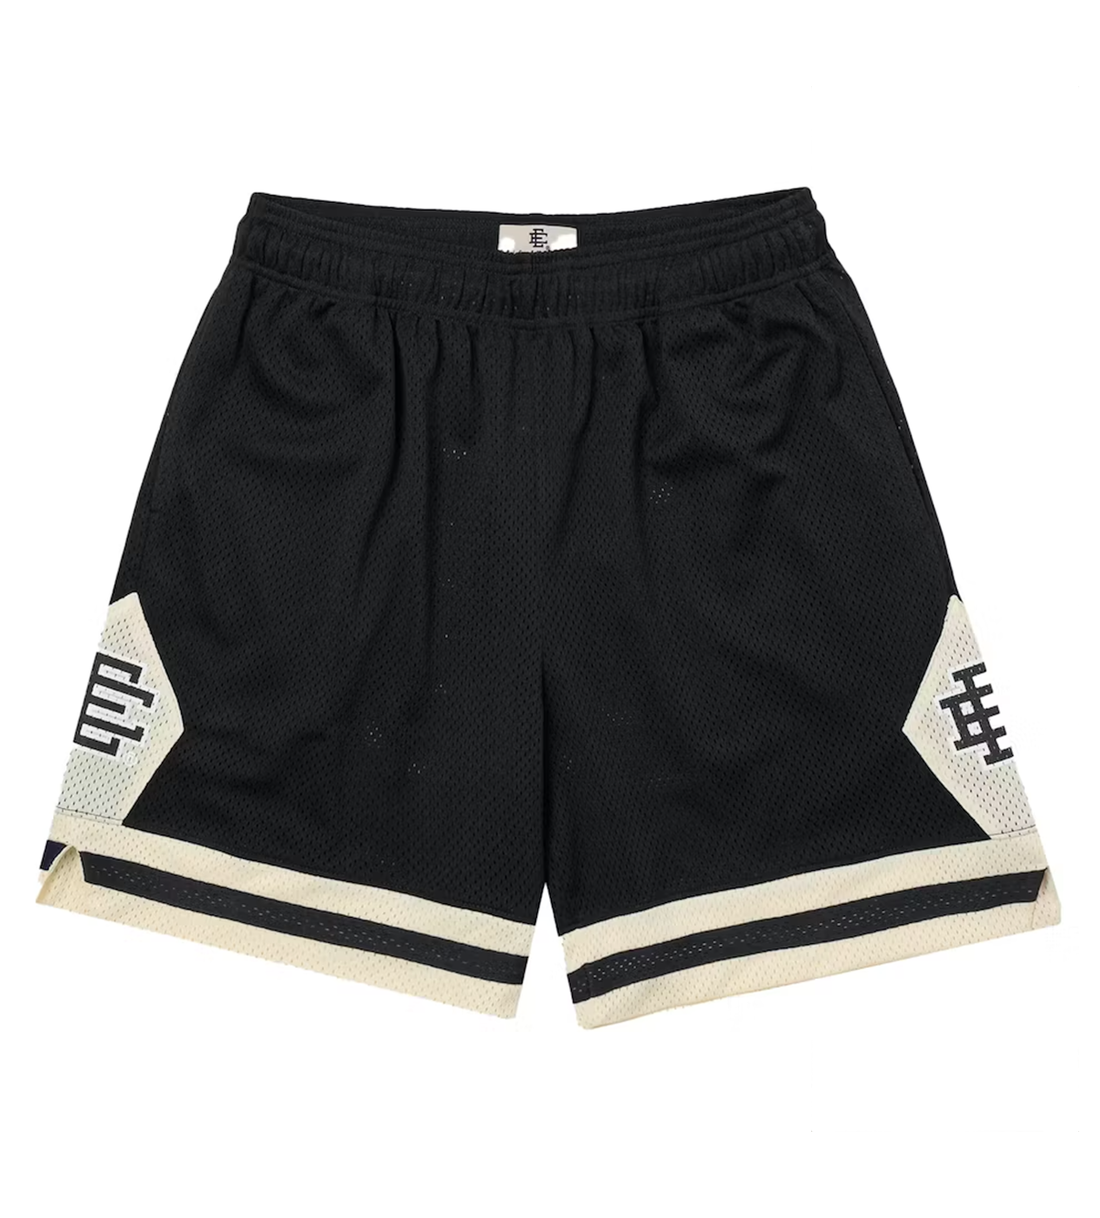 Eric Emanuel Black/Cream Shorts